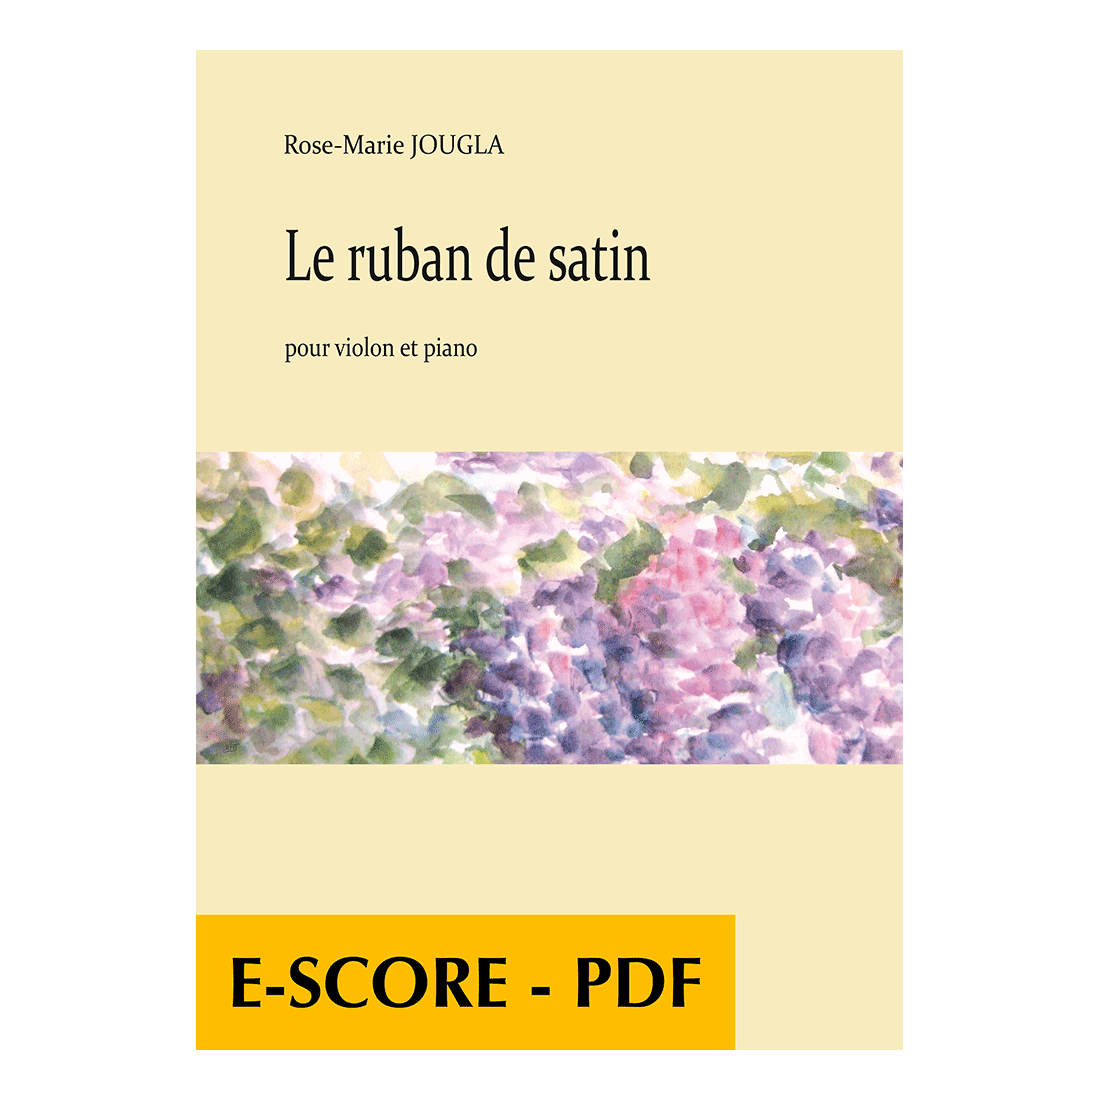 Le ruban de satin für Violine und Klavier - E-score PDF